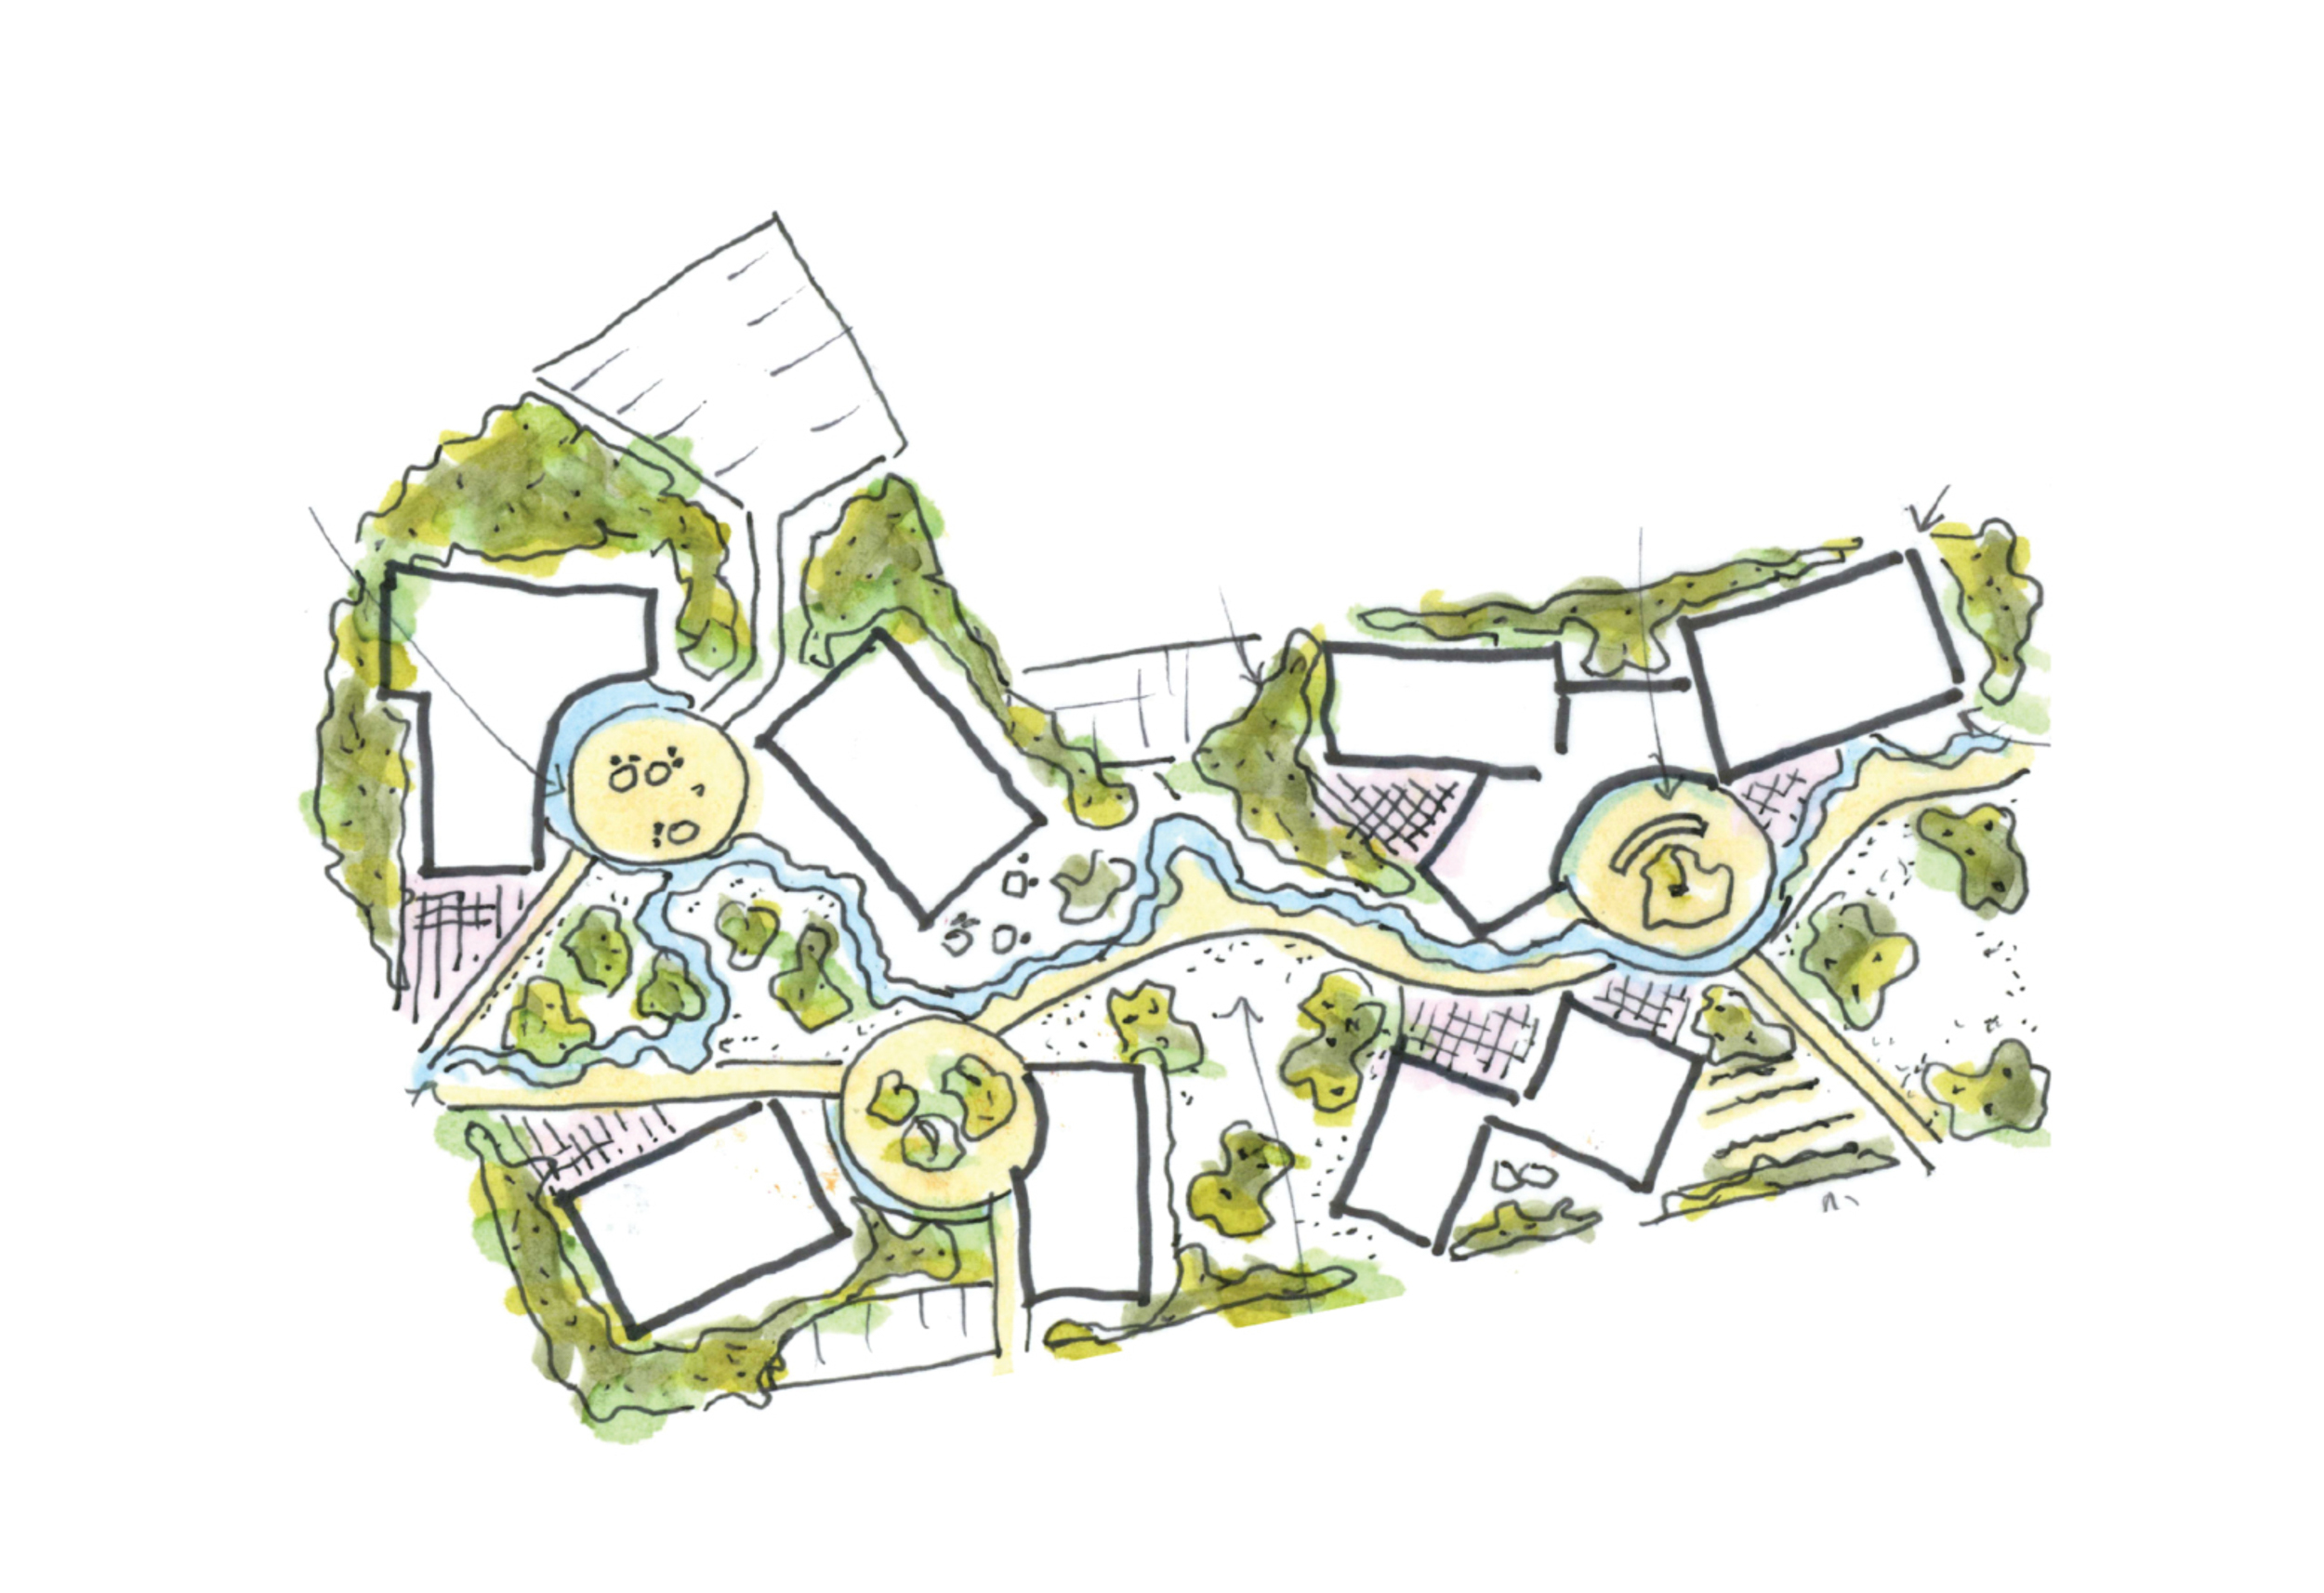 pavilions in a landscape landscape plan | Cambridge architects CDC Studio